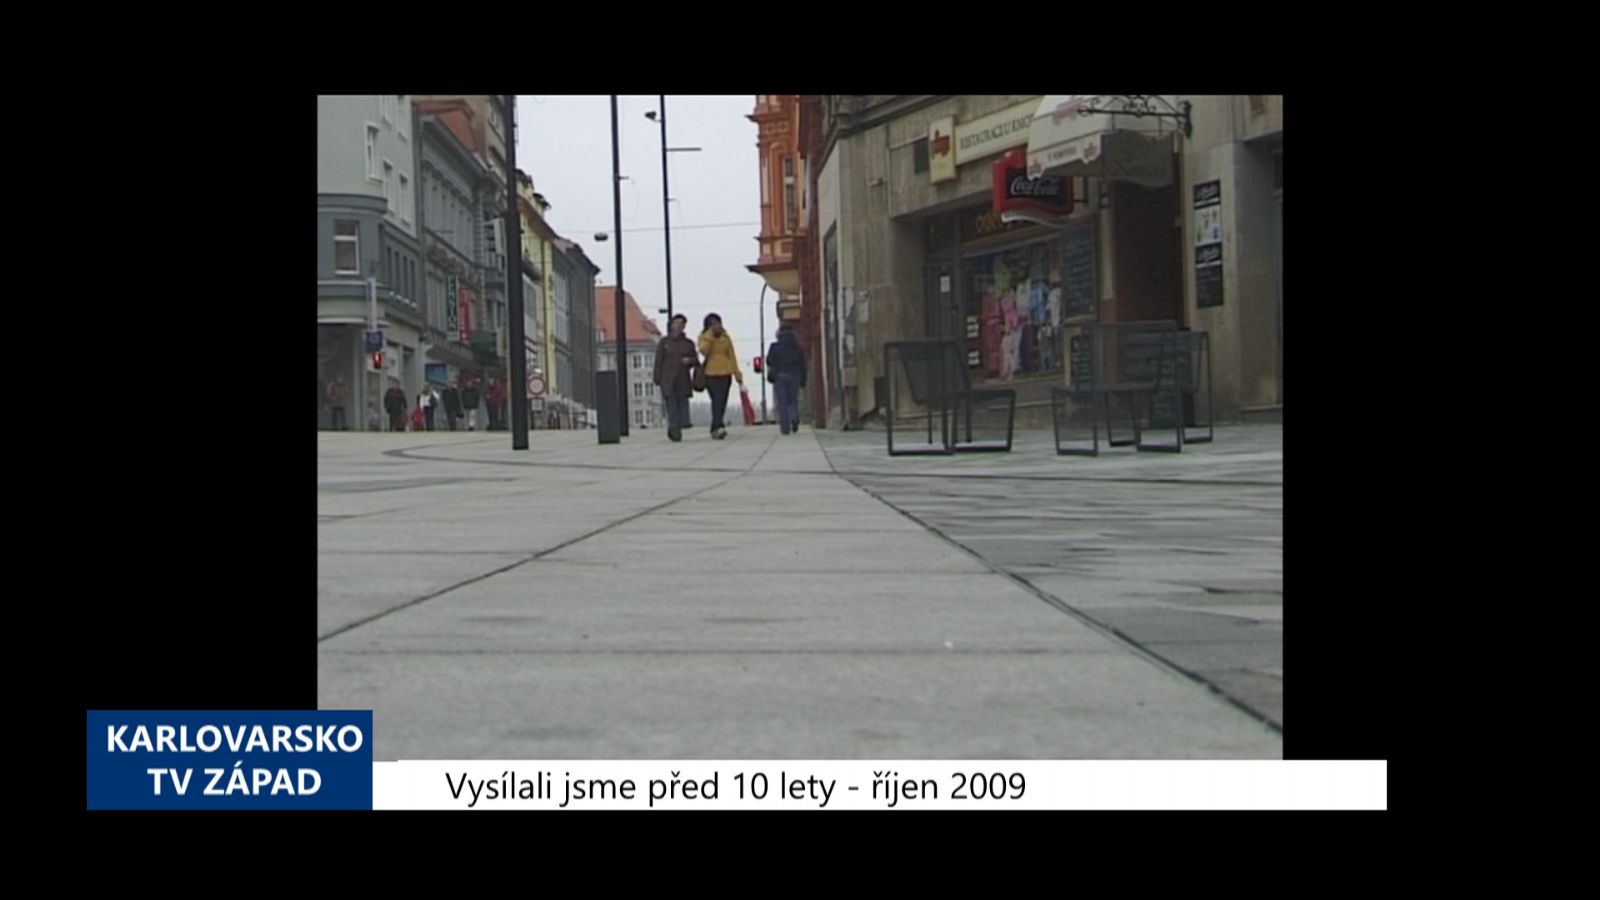 2009 – Cheb: Povrch pěší zóny se bude čistit podle manuálu (3877) (TV Západ)		